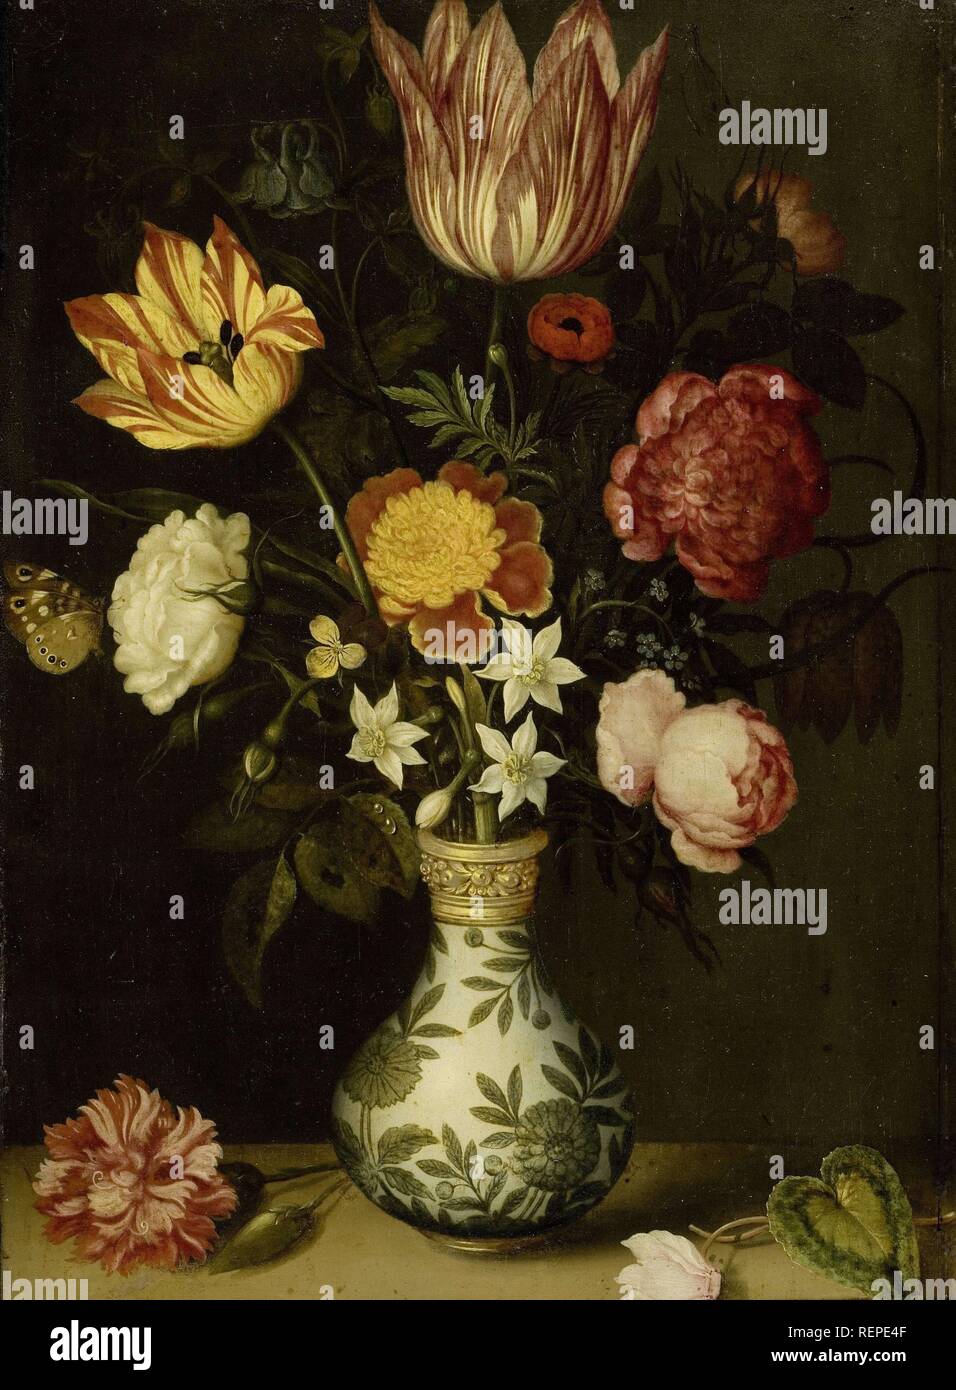 Nature morte avec fleurs dans un vase Wan-li. Dating : 1619. Mesures : support : H 31 cm × w 22,5 cm. Musée : Rijksmuseum, Amsterdam. Auteur : AMBROSIUS BOSSCHAERT. Banque D'Images